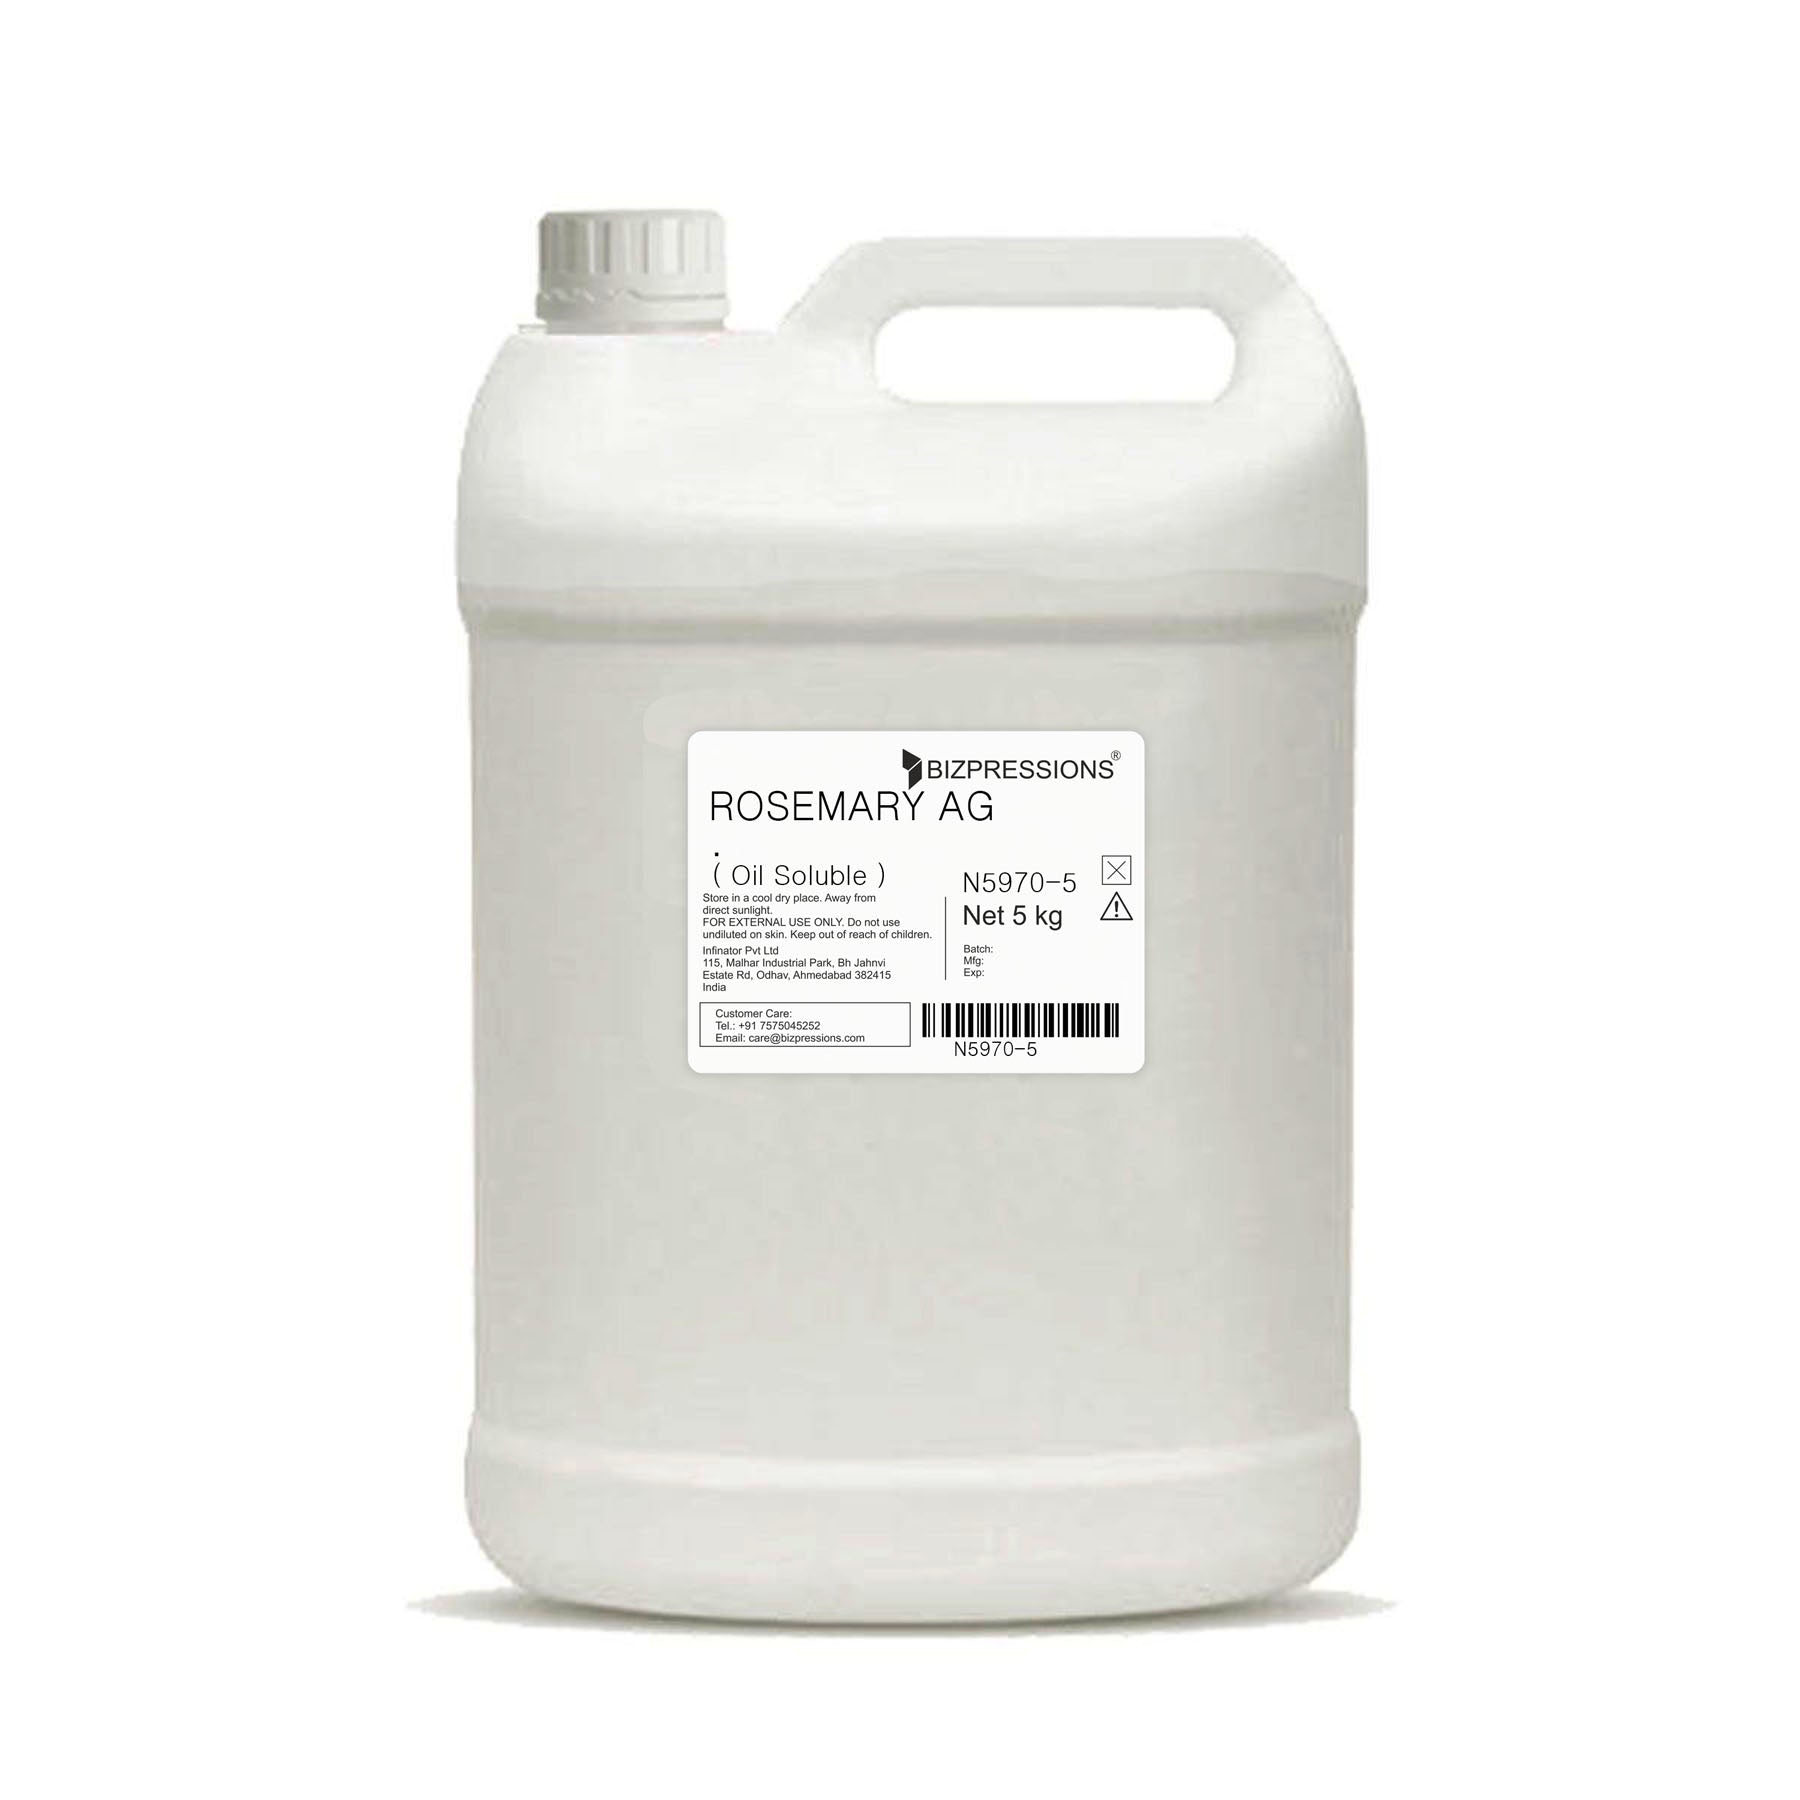 ROSEMARY AG - Fragrance ( Oil Soluble ) - 5 kg